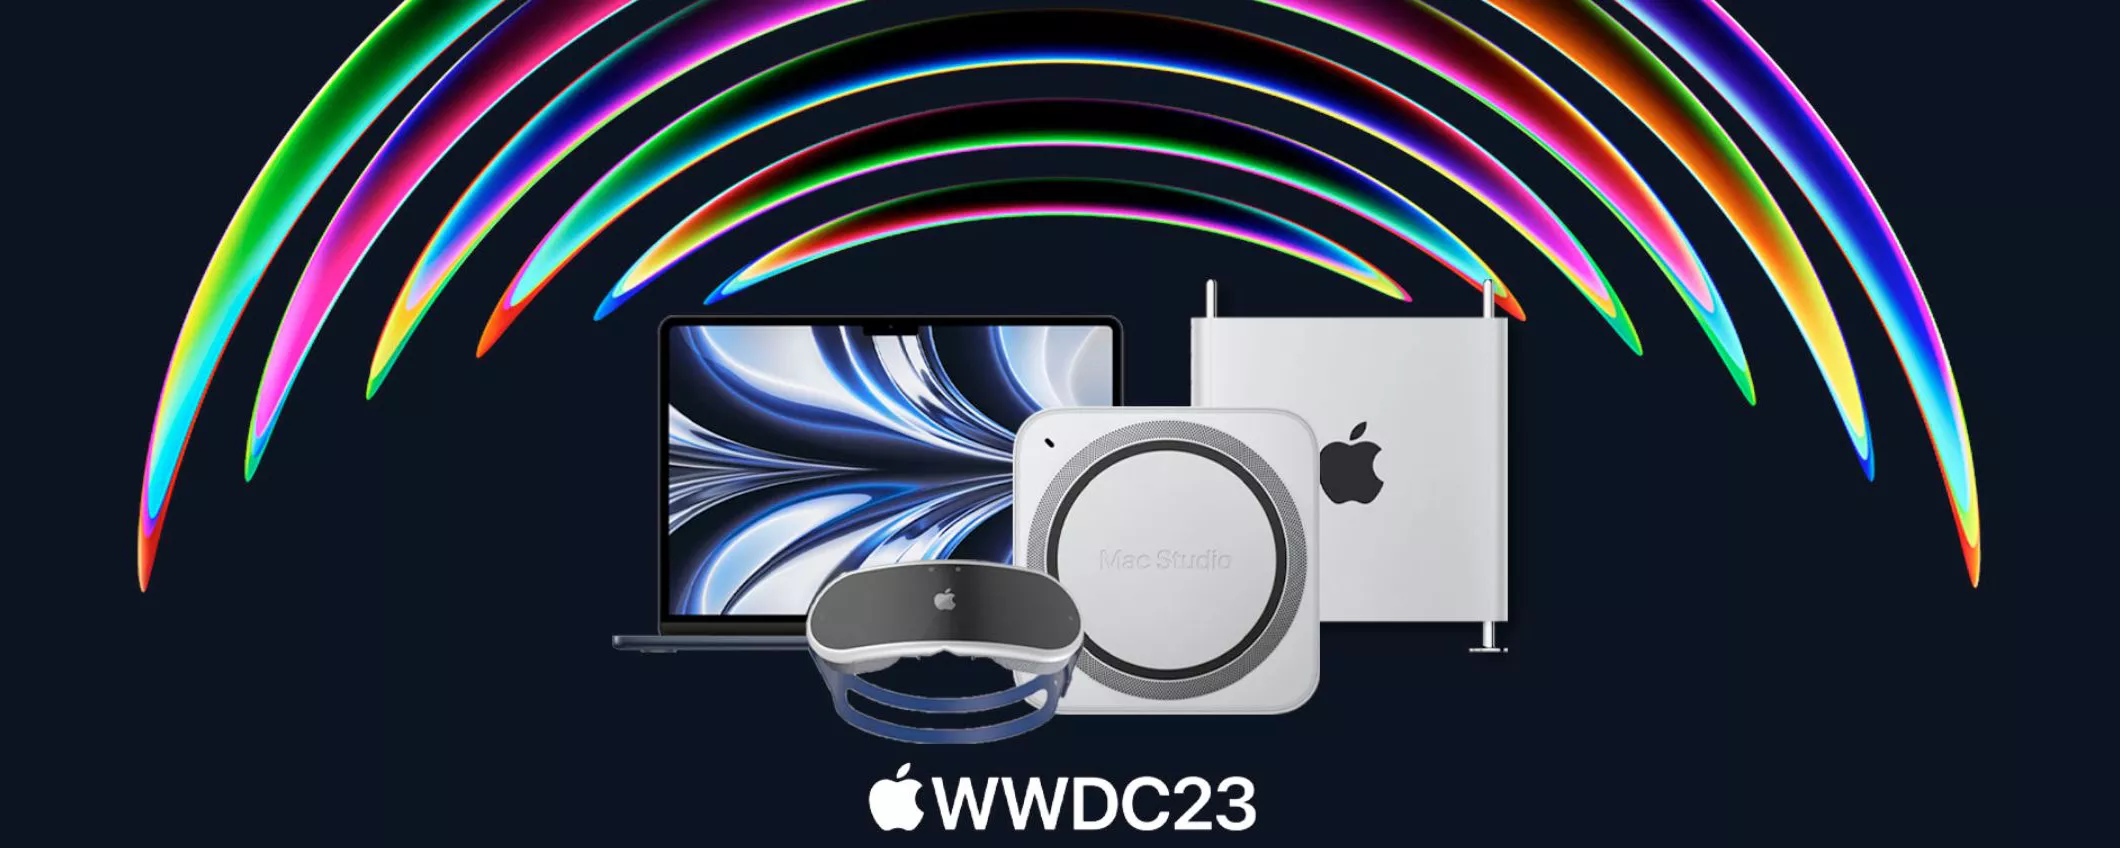 WWDC 2023: Apple svela il programma dell'evento del 5 giugno